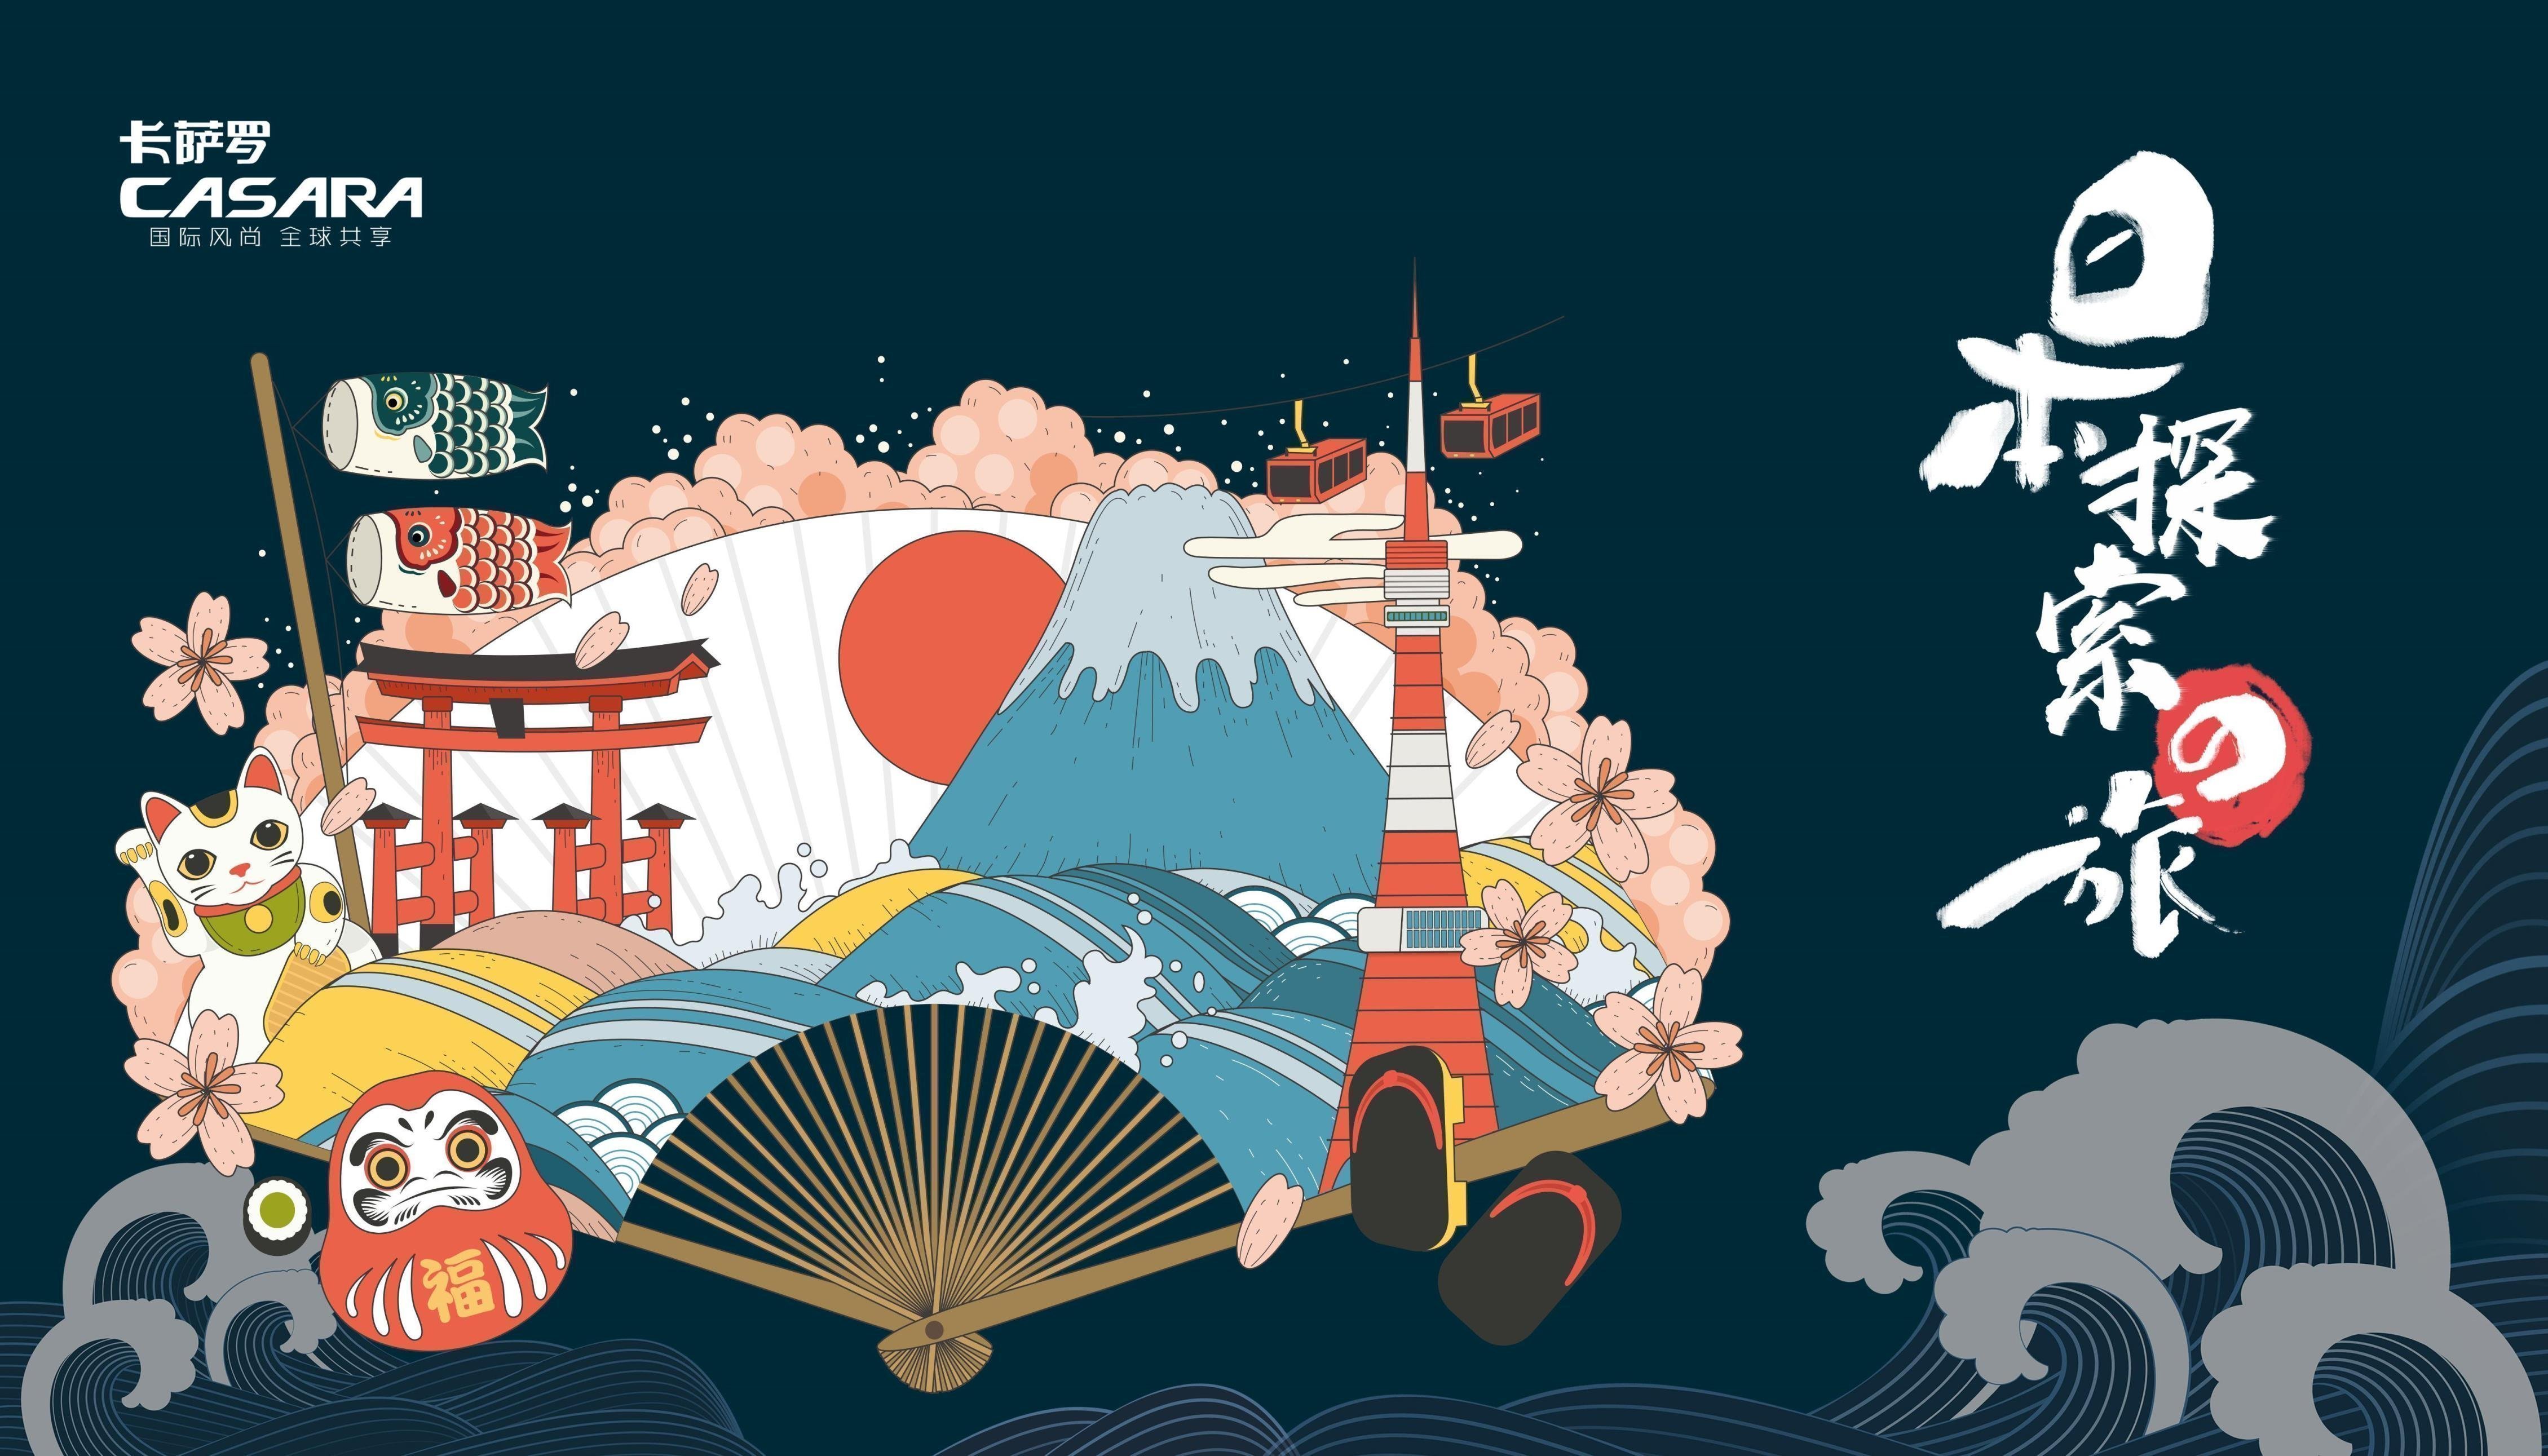 卡萨罗纵横世界之旅——带你领略不一样的富士山